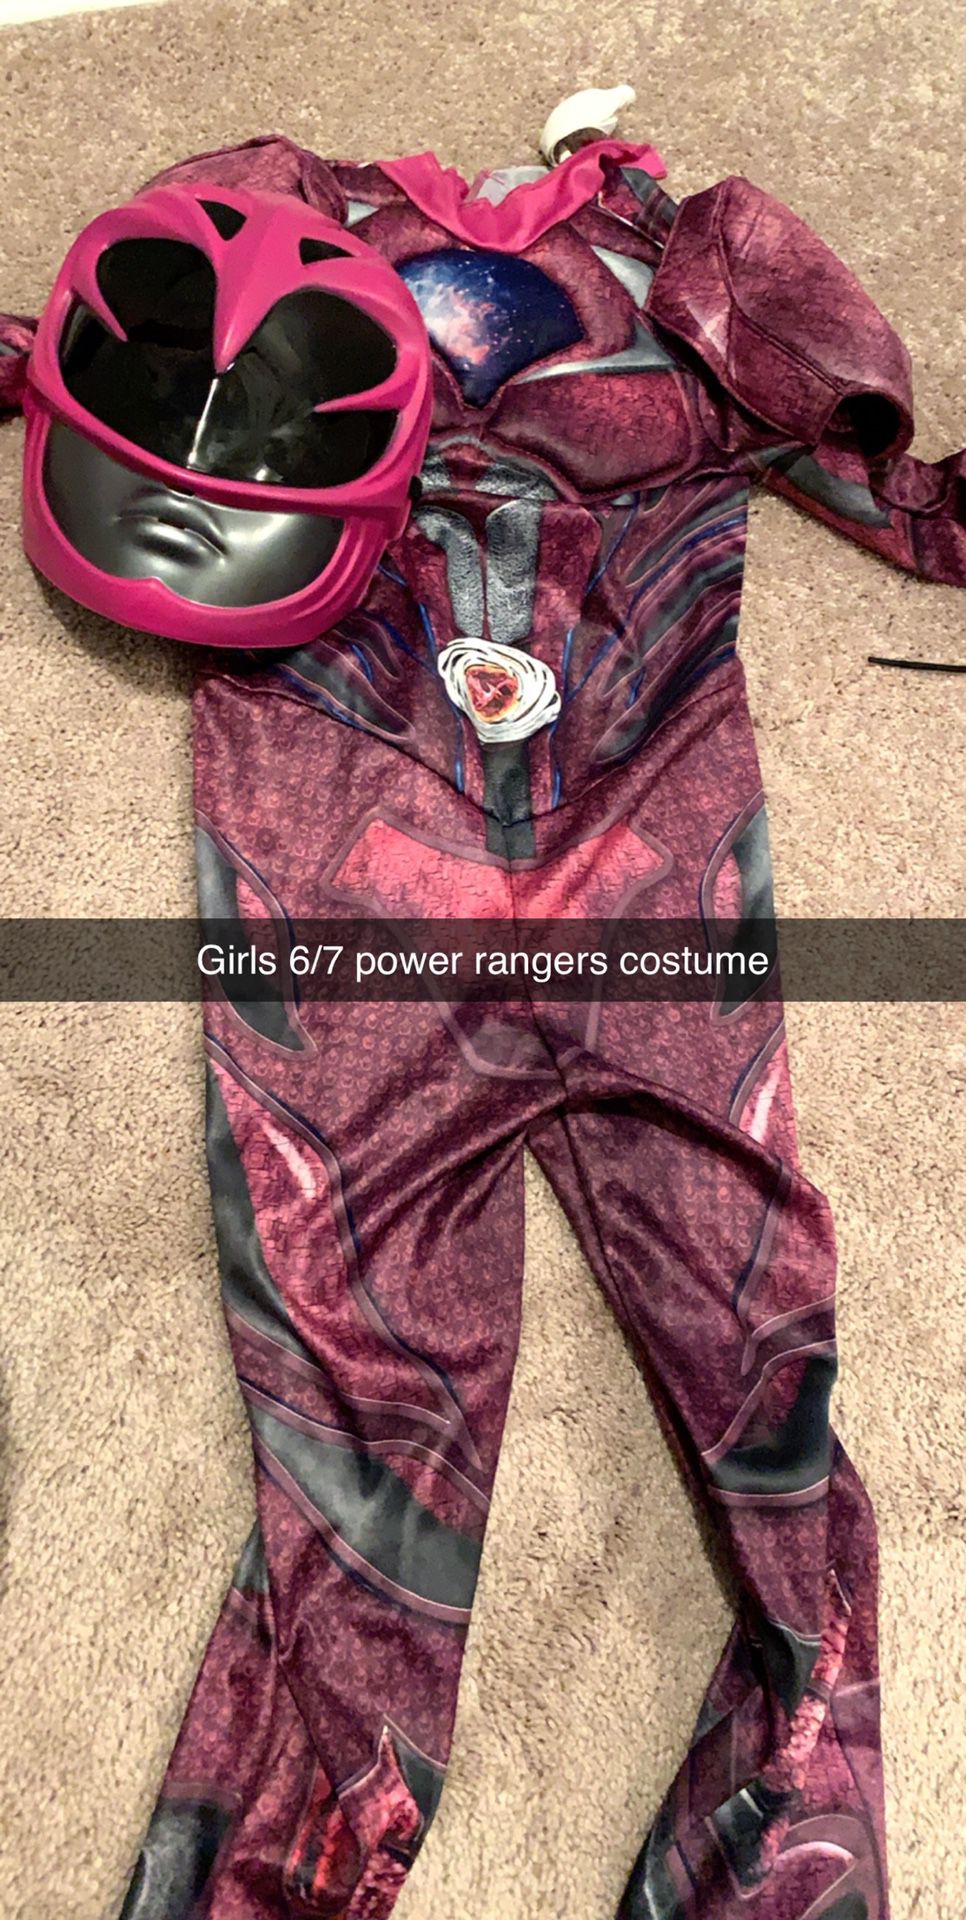 Girls costumes 4-6